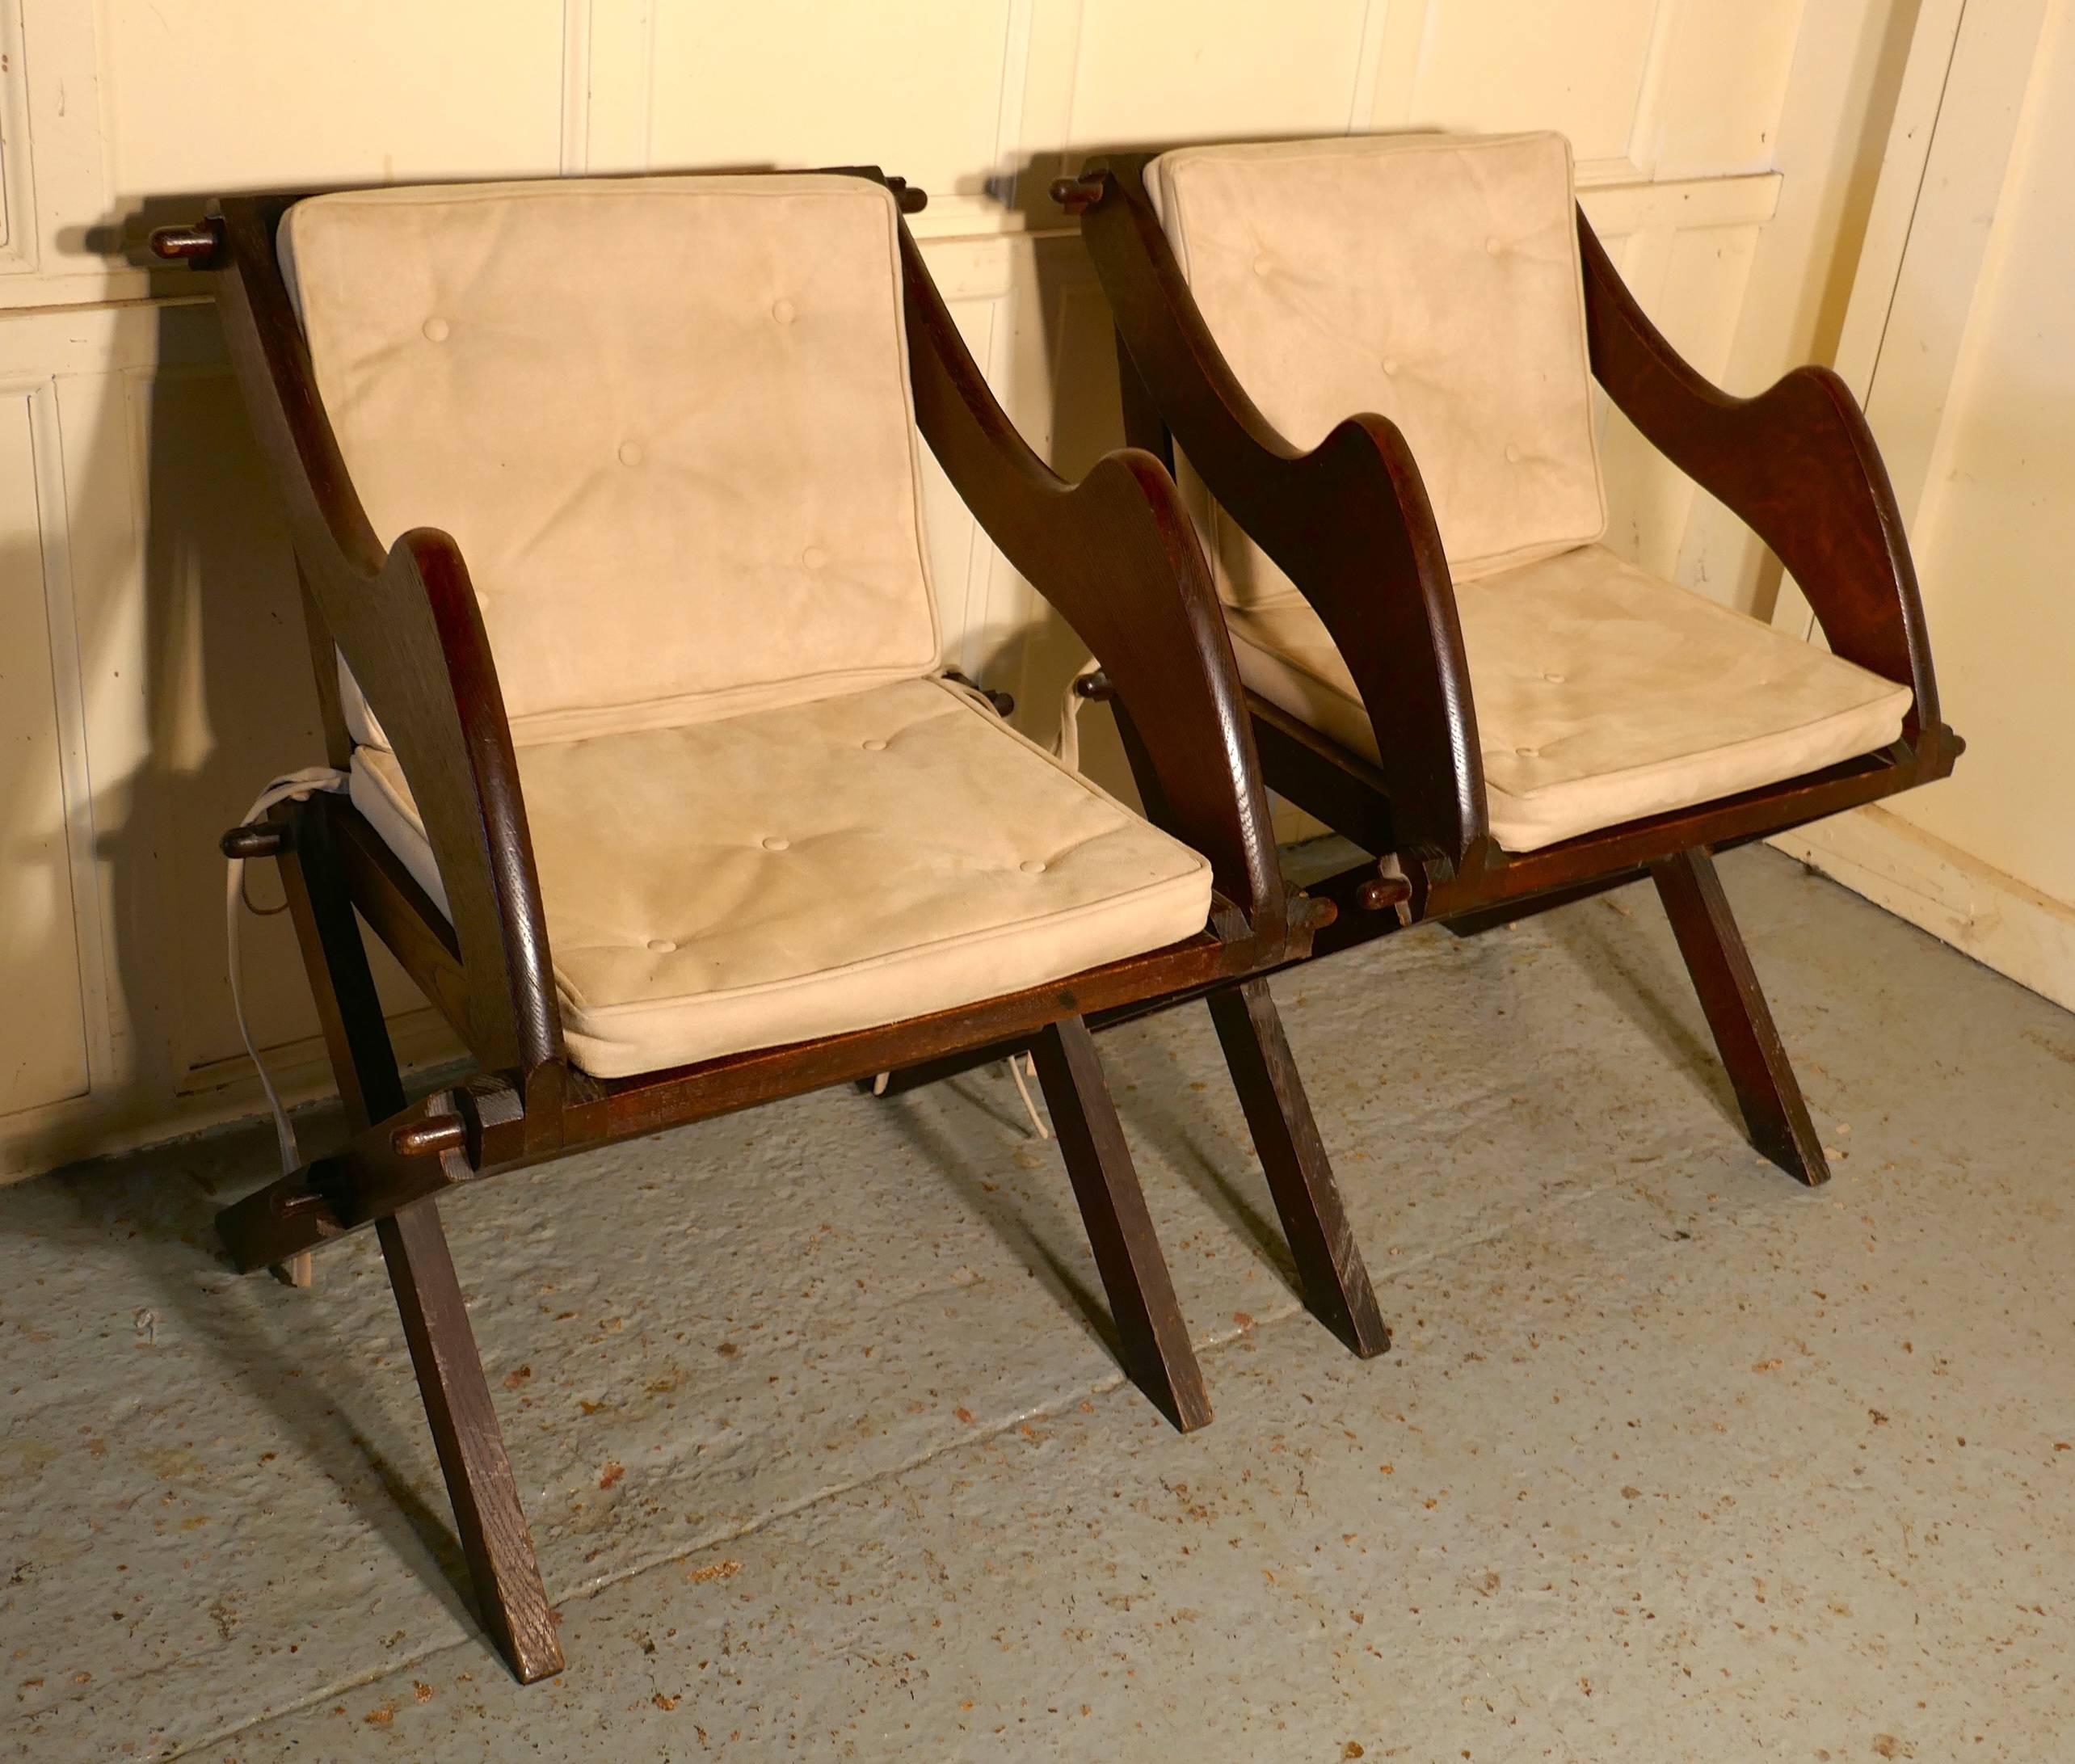 Ein Paar Glastonbury-Stühle aus Eiche aus dem 19.

Der Glastonbury-Stuhl wurde ab dem 15. Jahrhundert hergestellt, und es ist selten, ein zusammengehöriges Paar zu finden.
Diese sind ein gutes Beispiel, sie sind aus massiver Eiche gefertigt, die